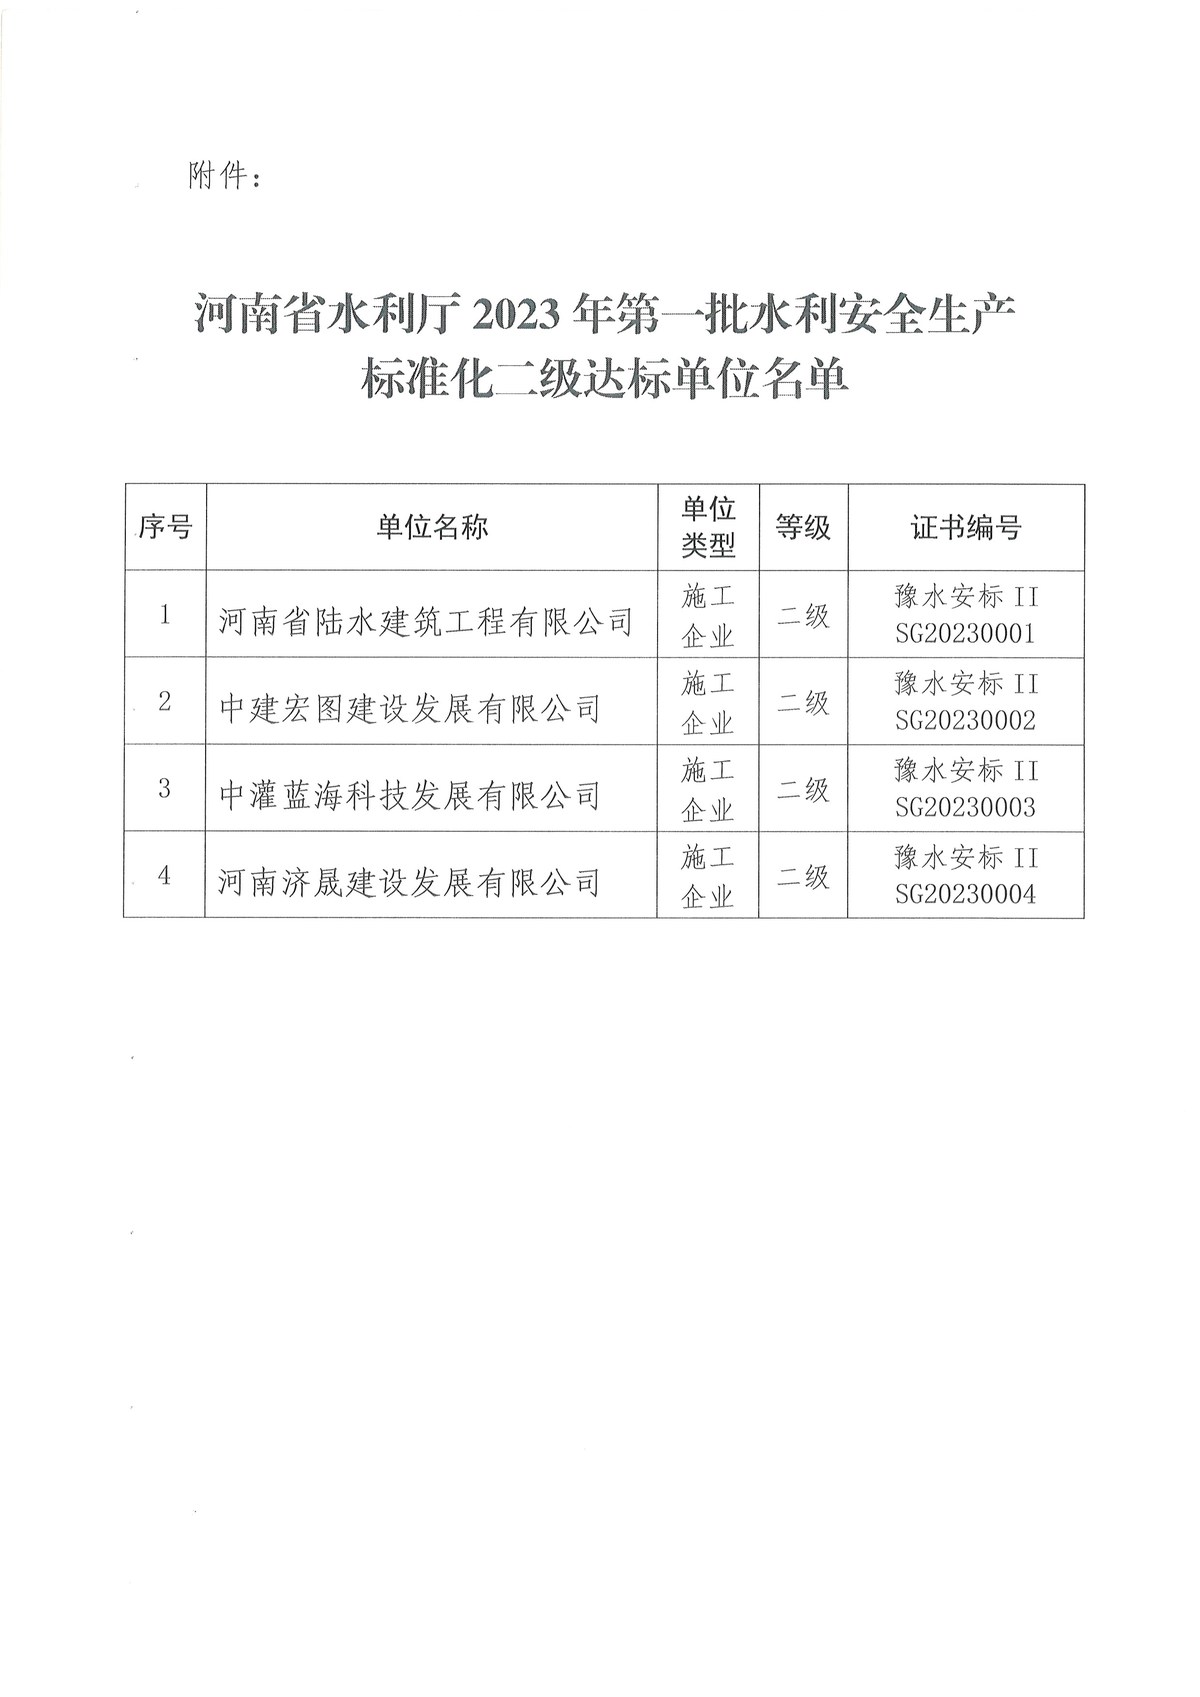 河南省水利厅关于公布2023年第一批水利安全生产标准化二级达标单位的公告2.jpg